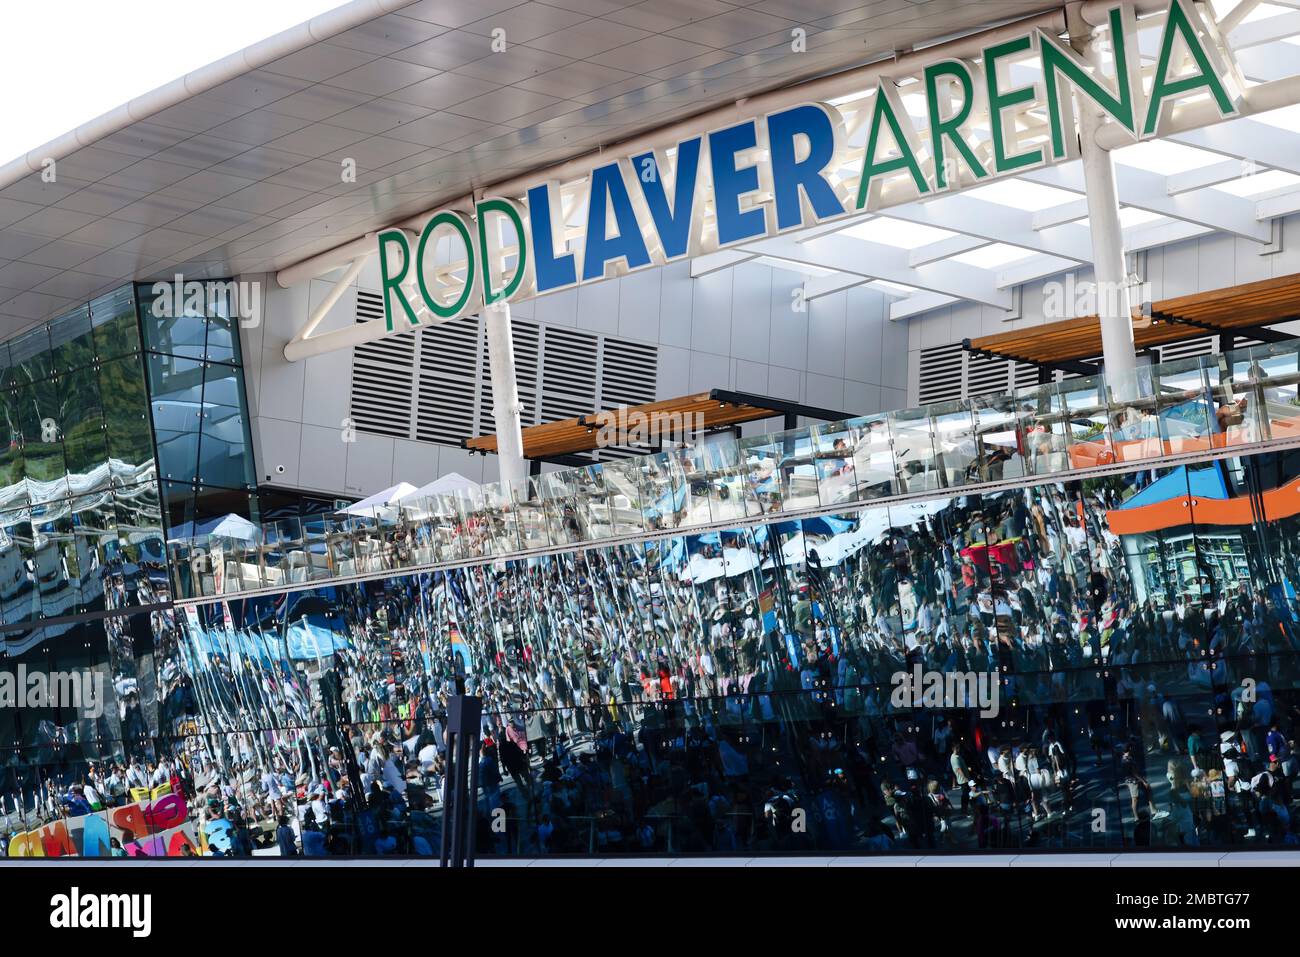 Melbourne, Australien. 21. Januar 2023. Die Glasfenster der Rod Laver Arena spiegeln Zuschauer wider, die über das Turniergelände laufen. Kredit: Frank Molter/dpa/Alamy Live News Stockfoto